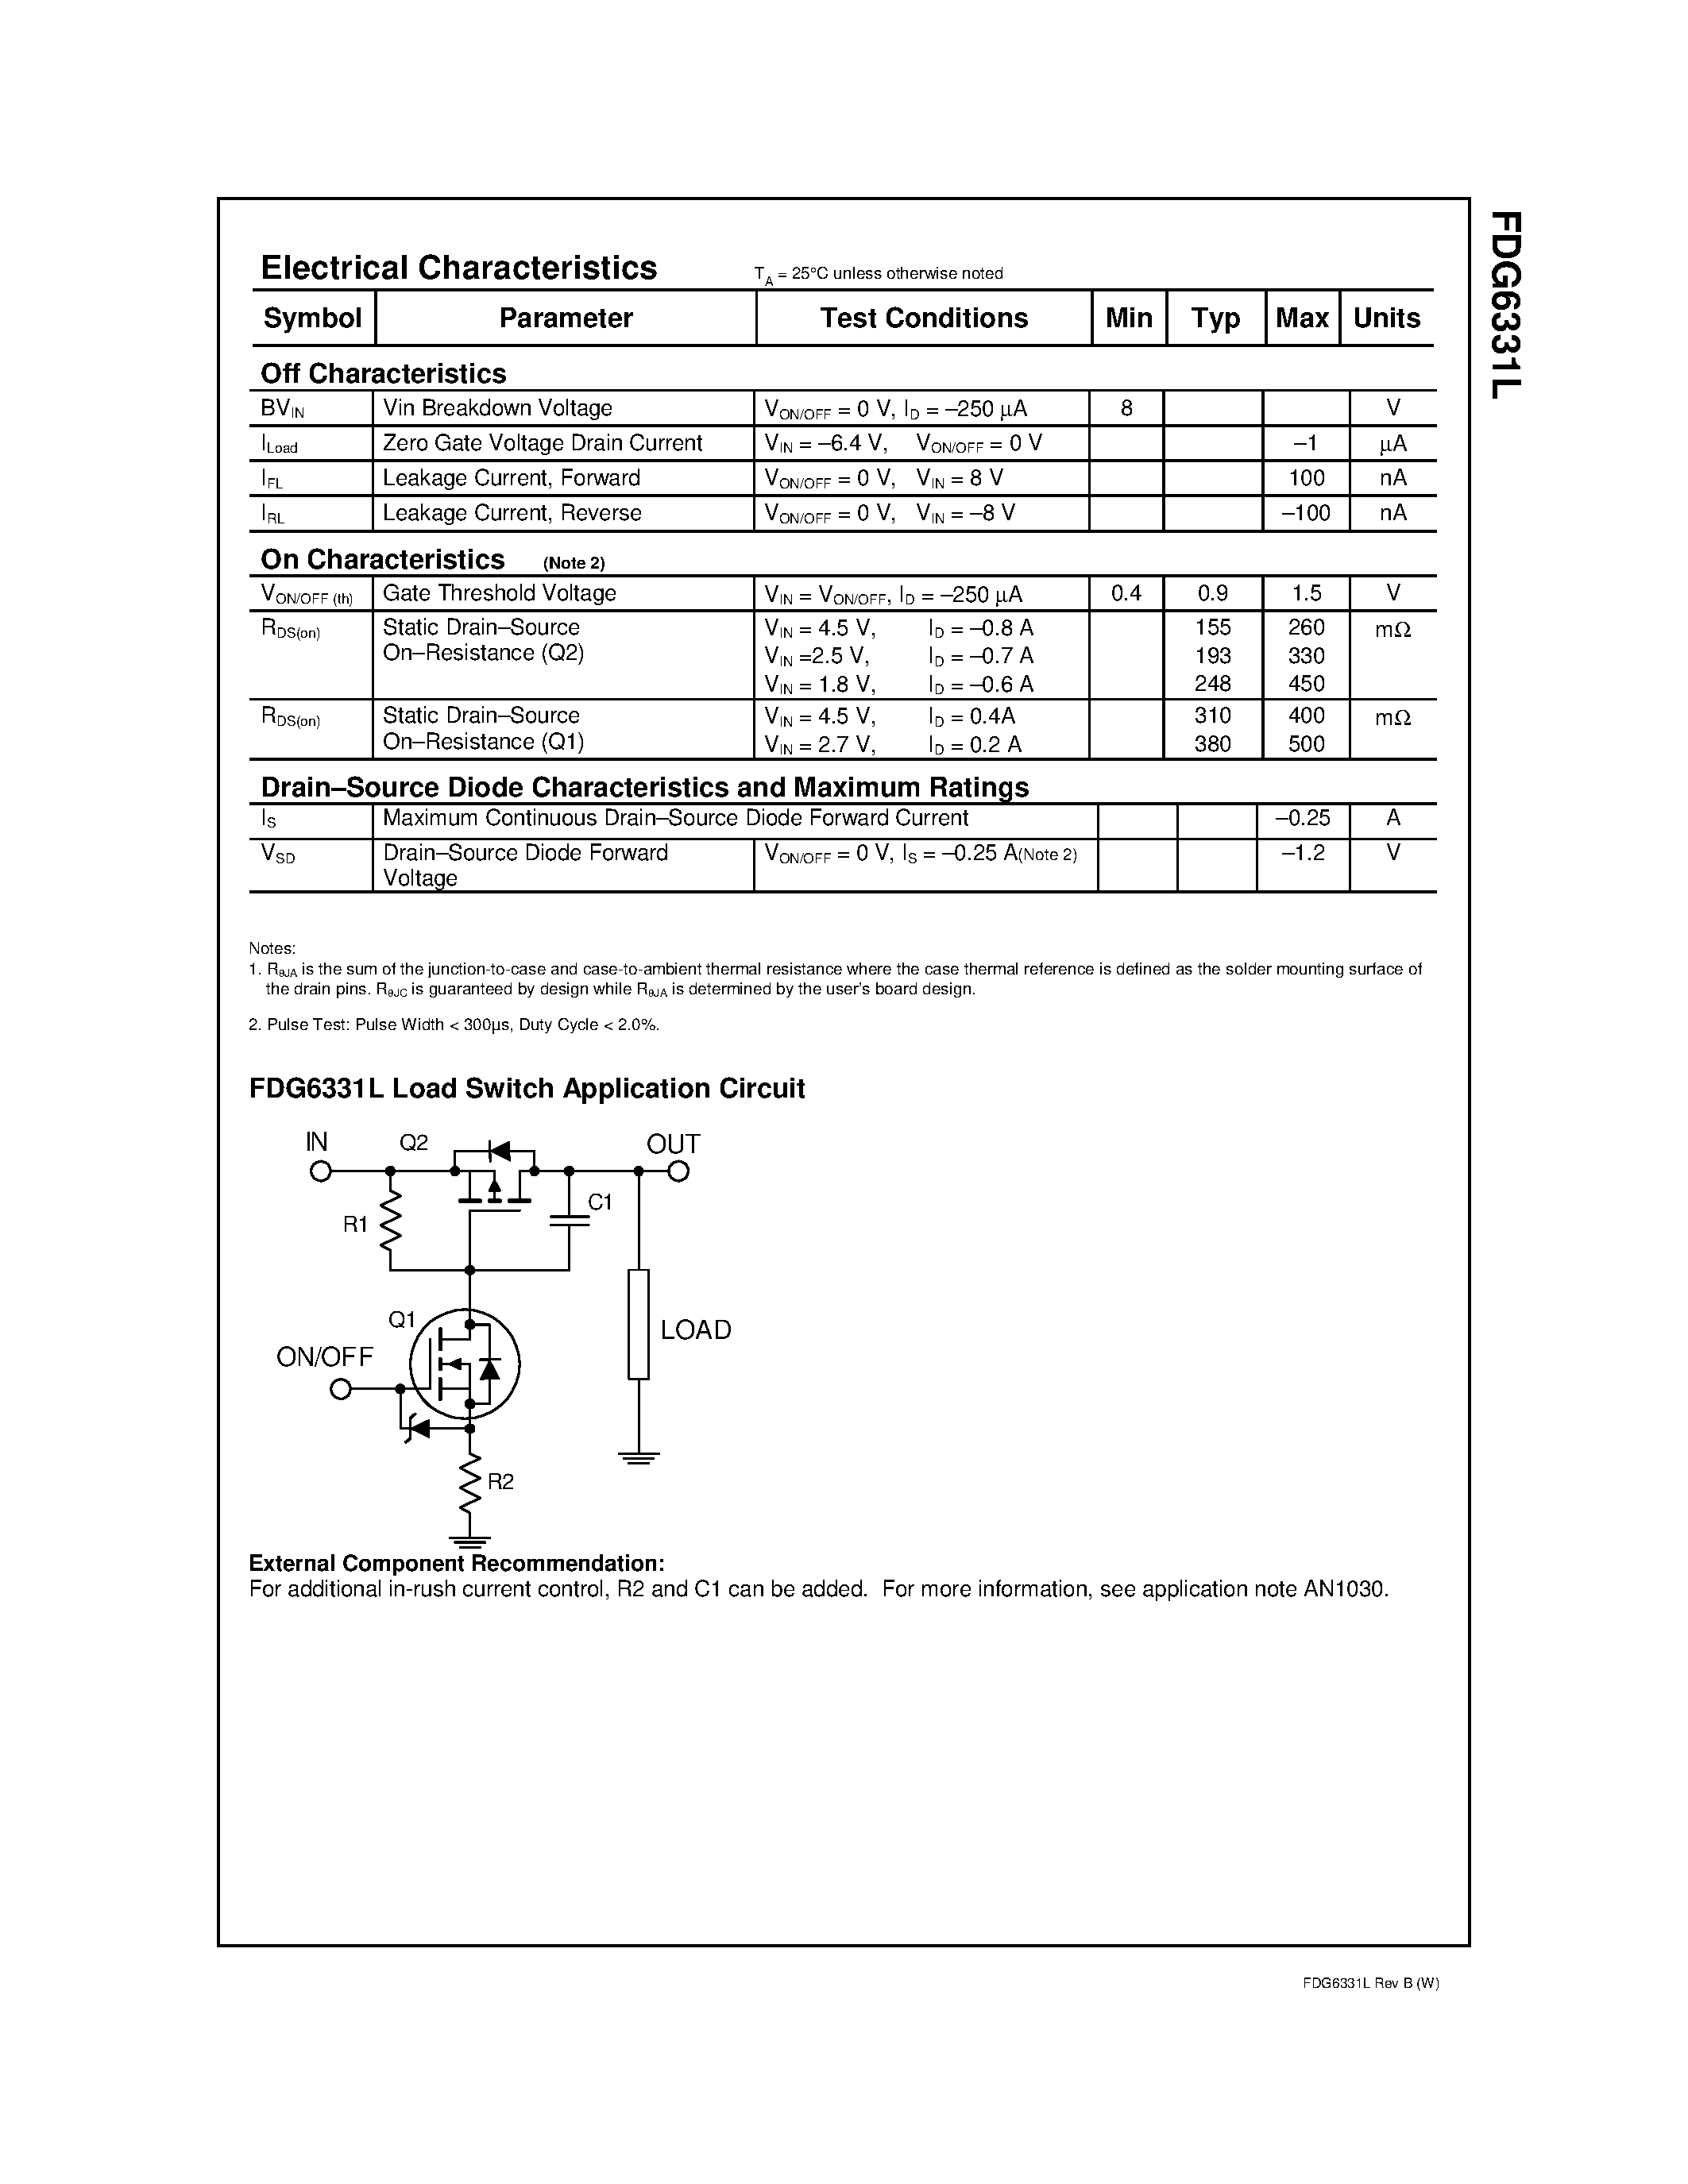 Даташит FDG6331L - Integrated Load Switch страница 2